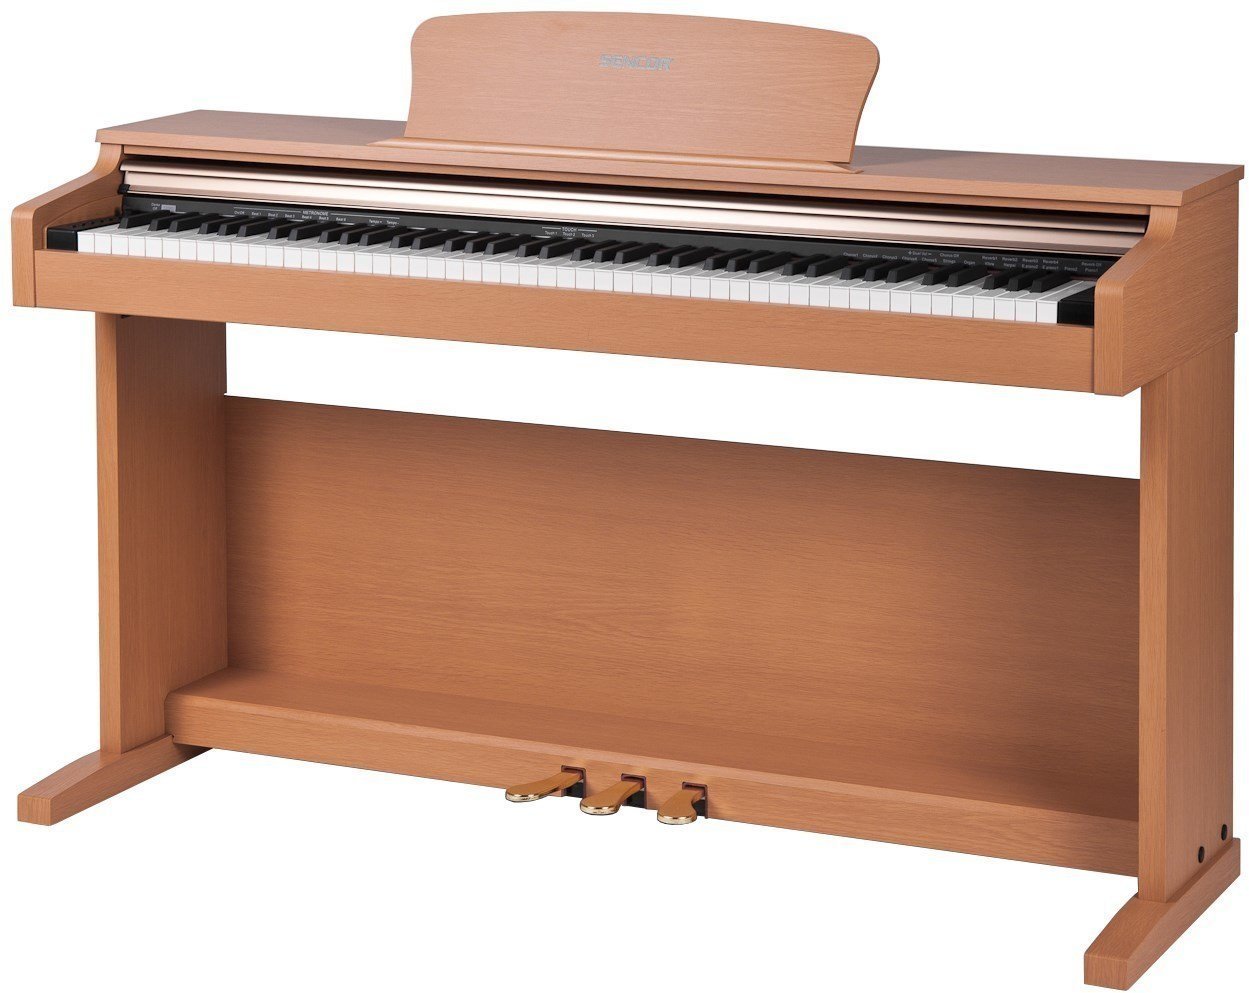 Piano digital SENCOR SDP 100 Oak Piano digital